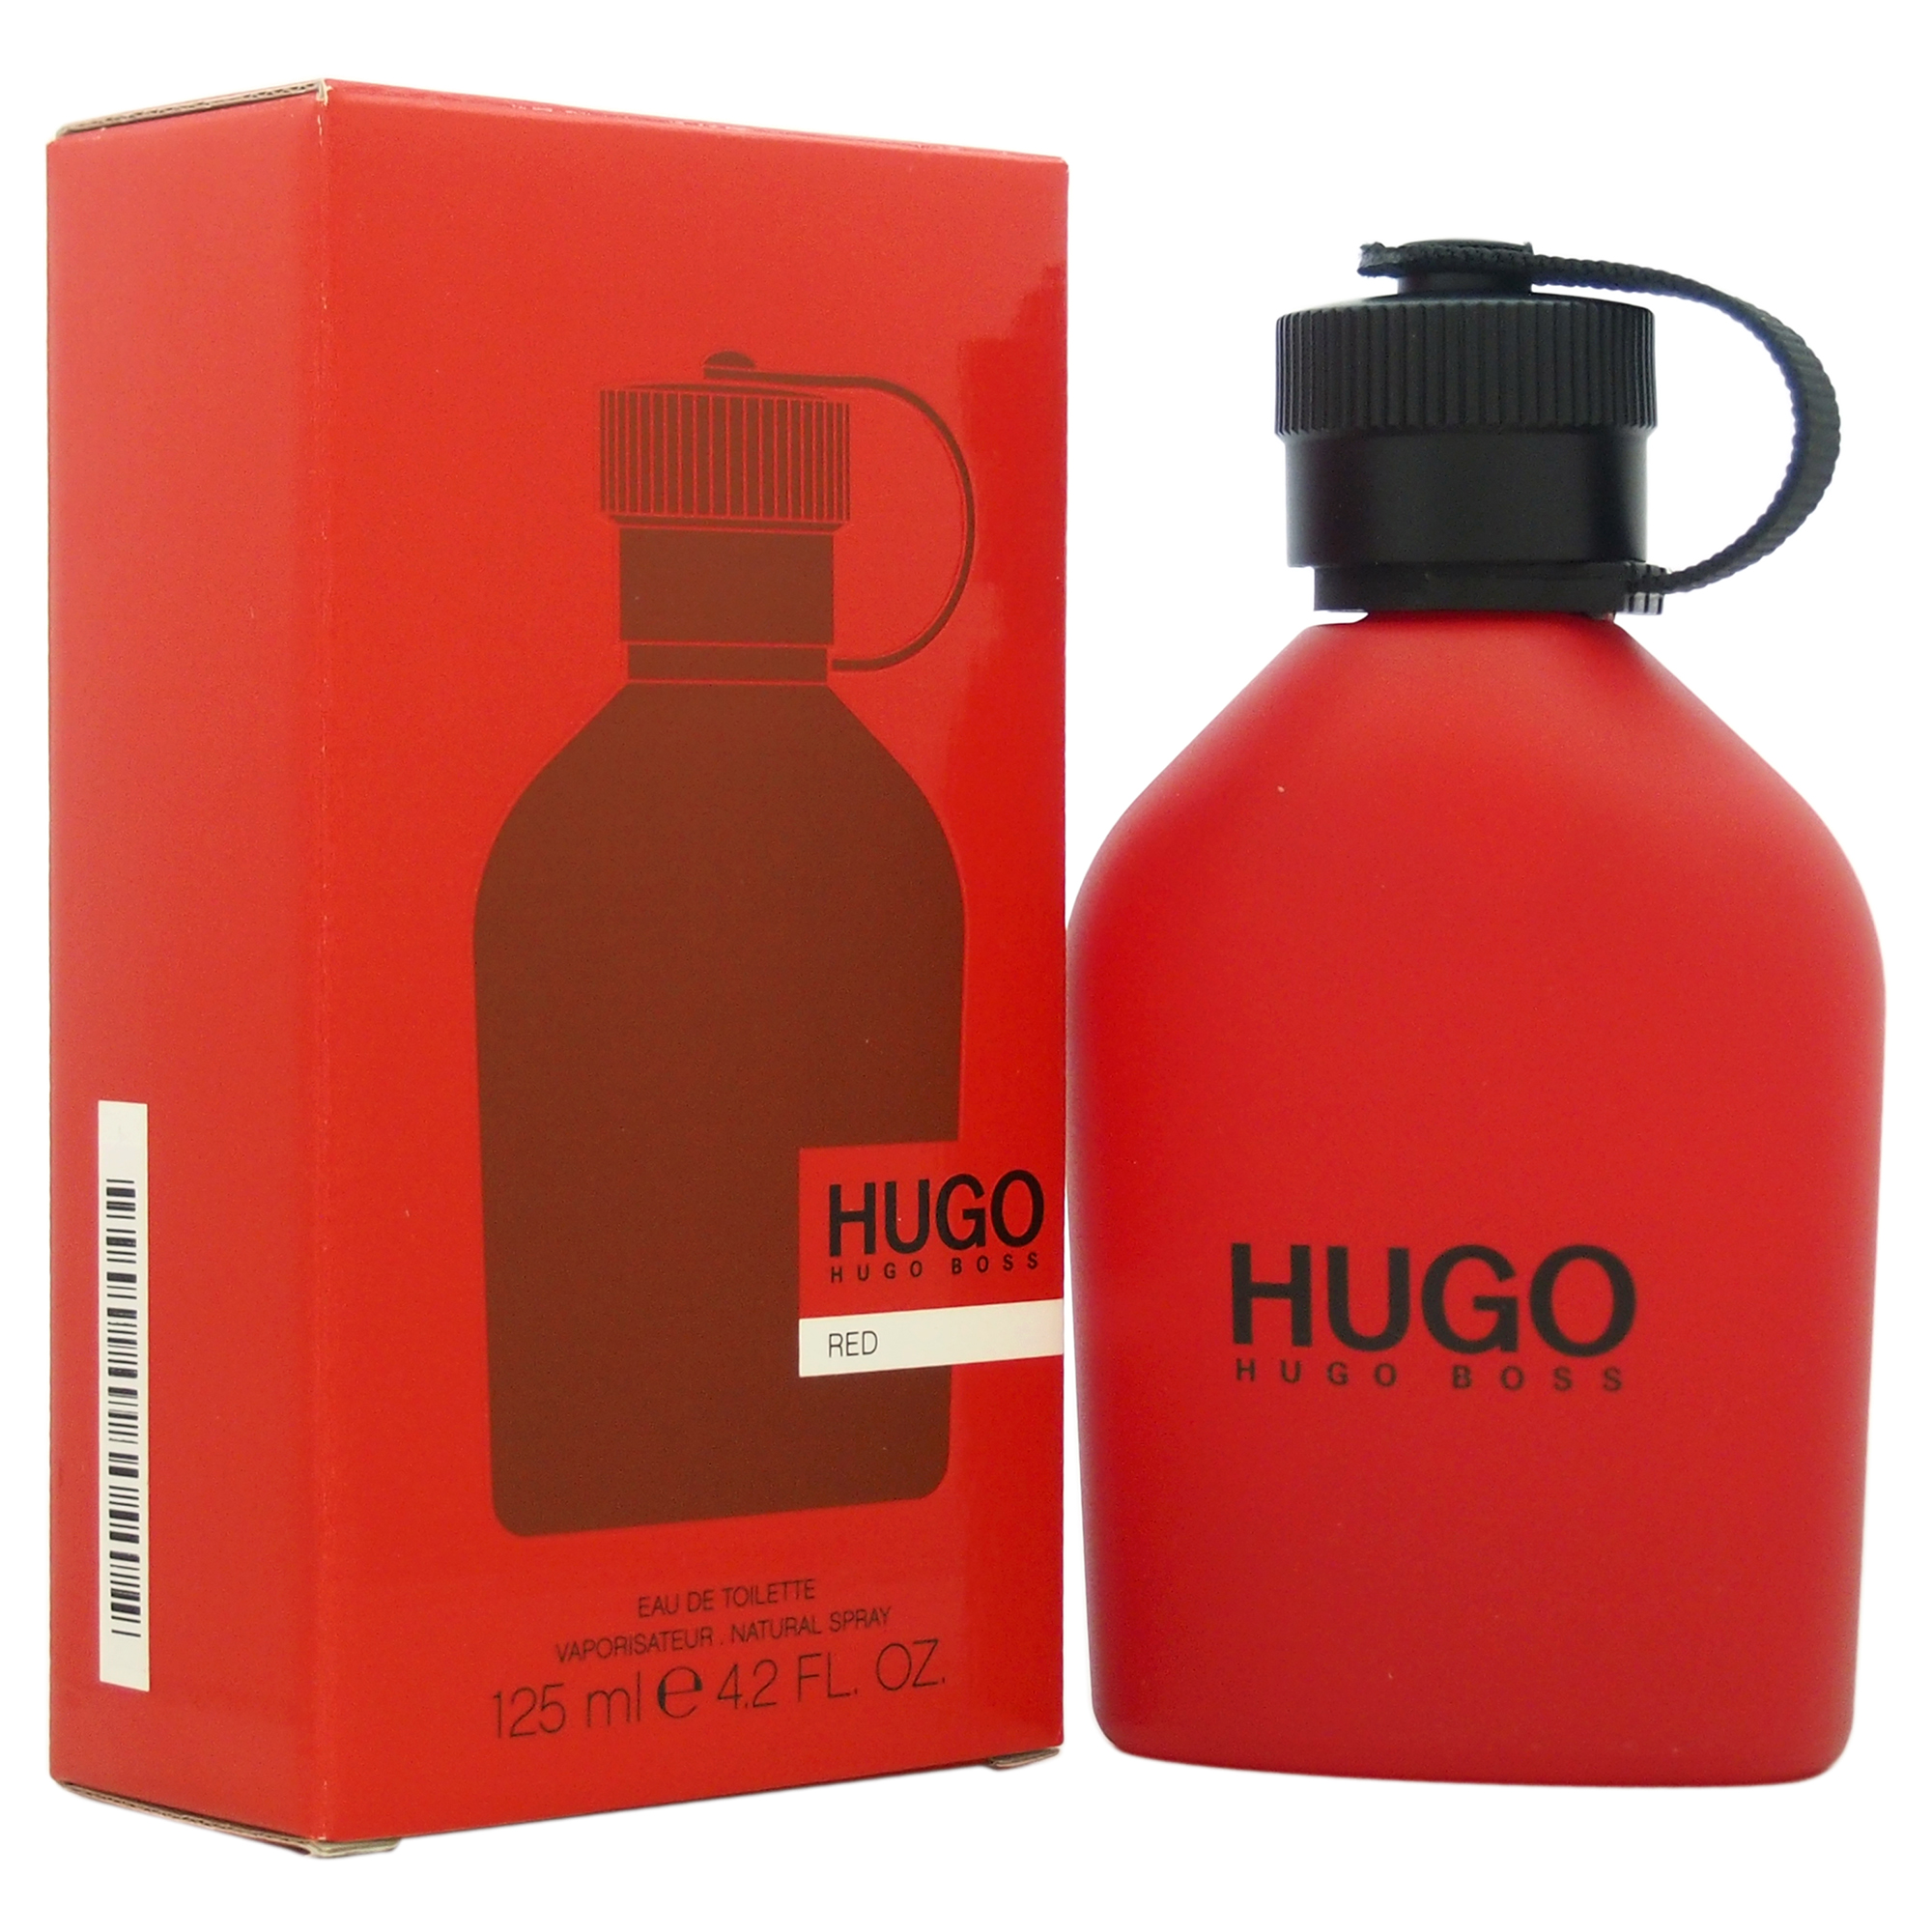 Хьюго босс ред. Hugo Boss Hugo Red. Хуго босс рыжий. Hugo Boss кроссовки мужские красные. Хуго босс ред